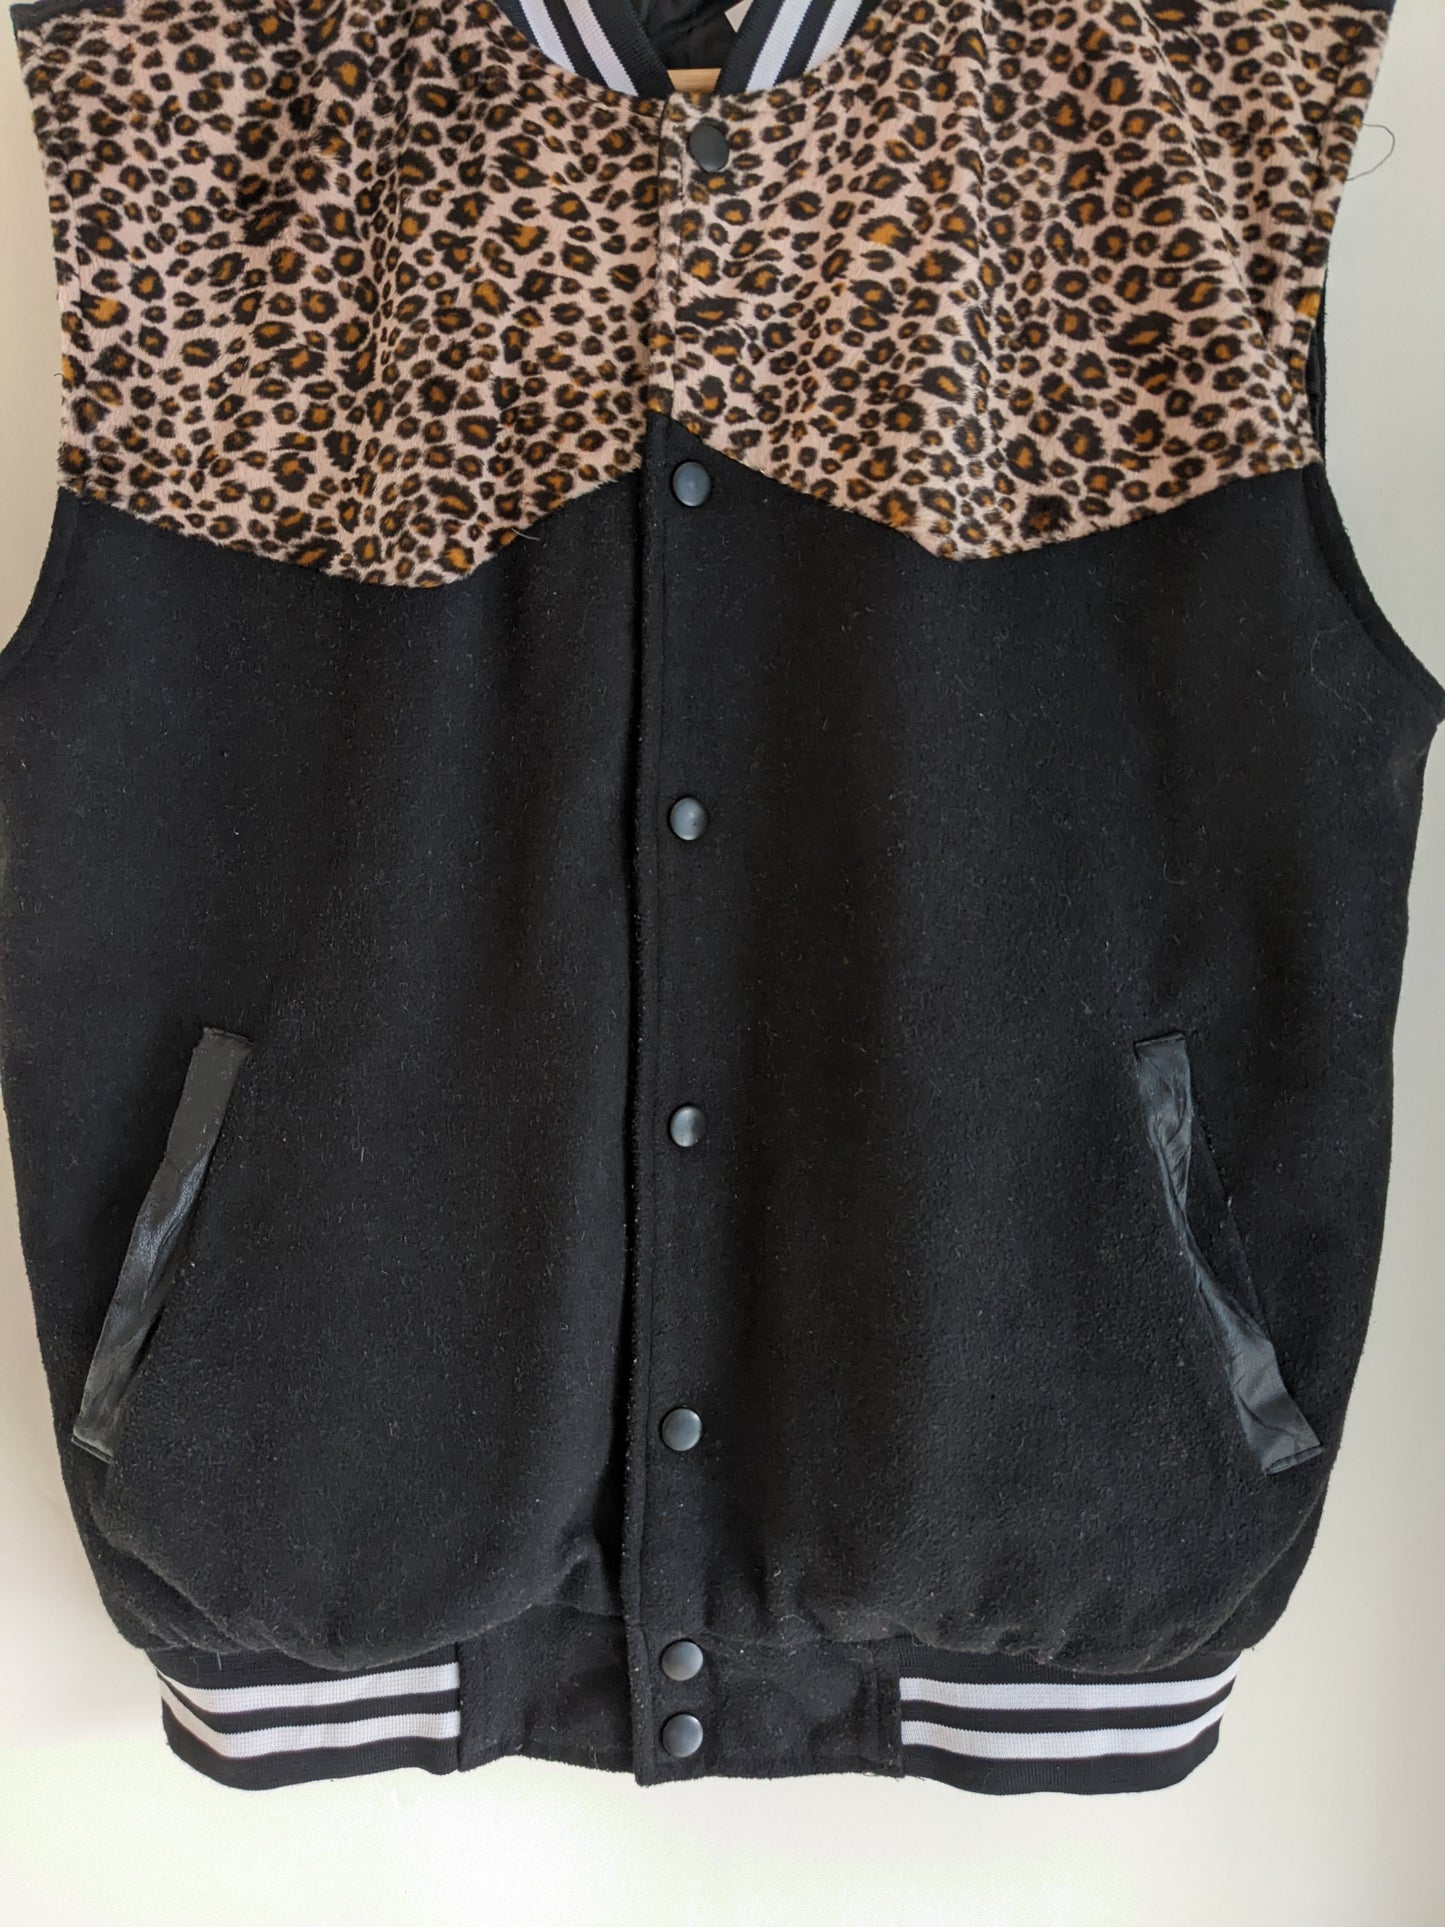 Cheetah Print Sleeveless Black Sehanuniv Varsity Jacket